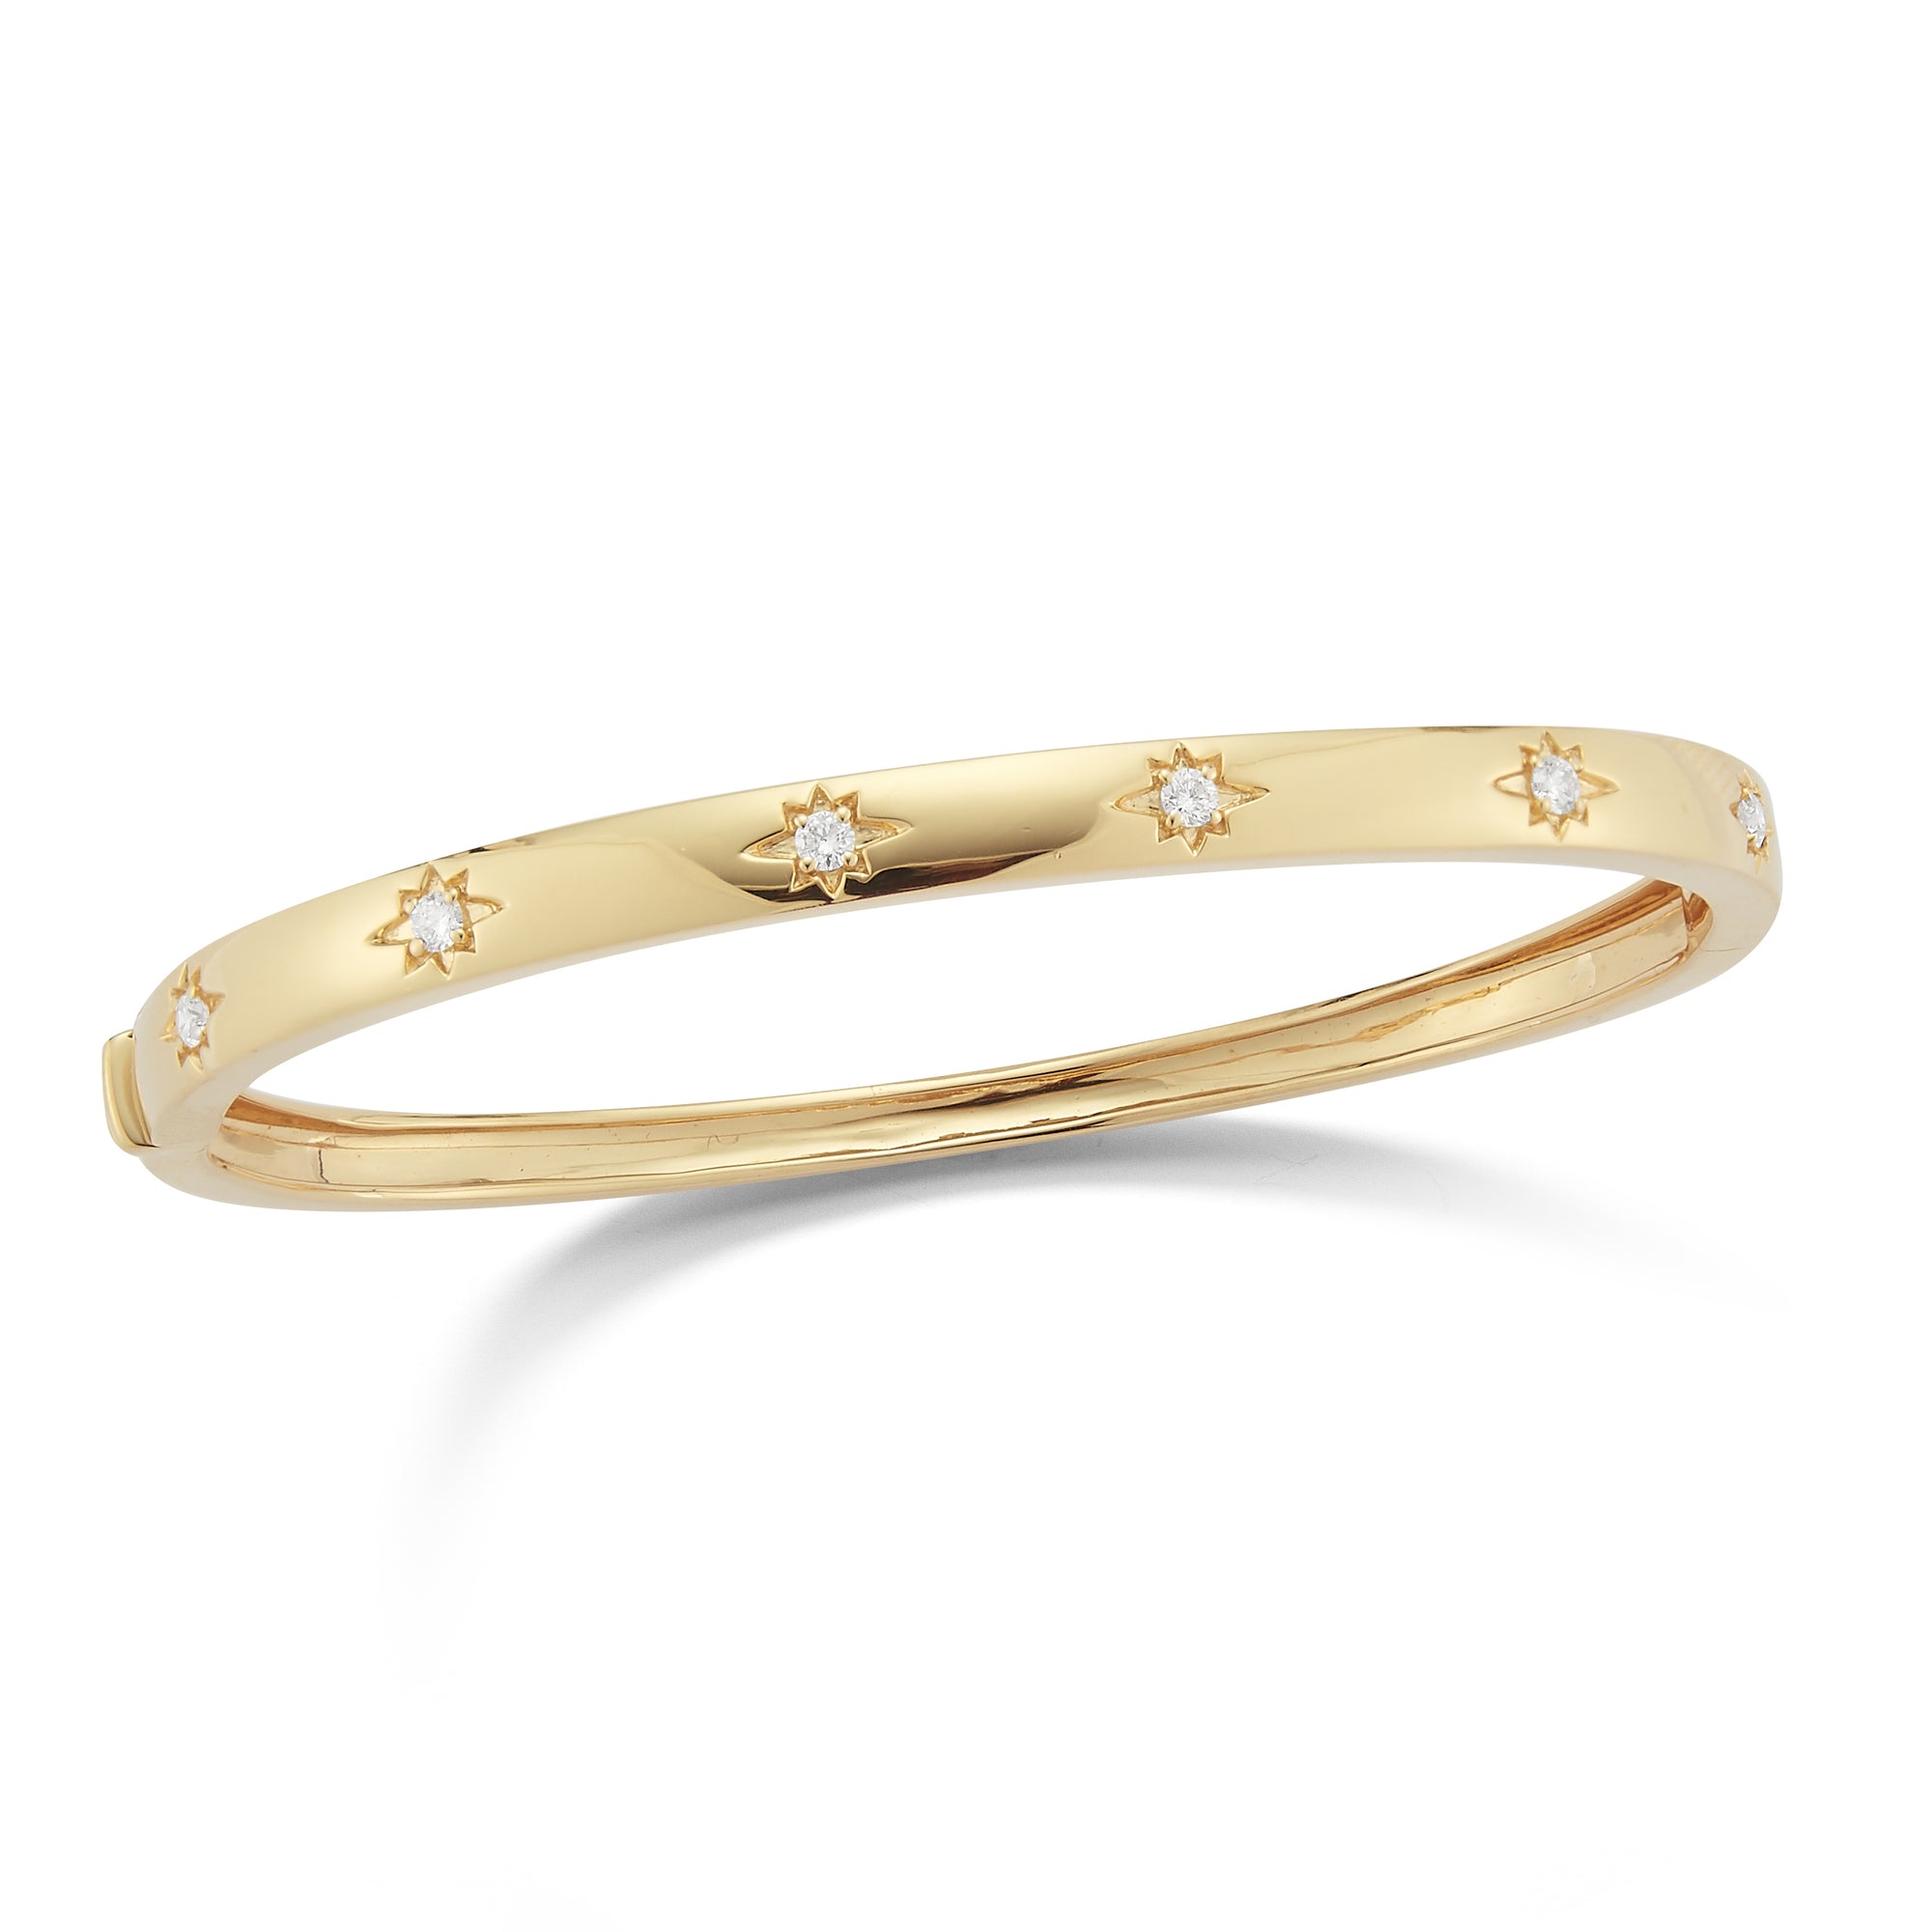 Diamond Starburst Bangle Bracelet  -14K gold weighing 11.43 grams  -6 round prong-set diamonds totaling .22 carats